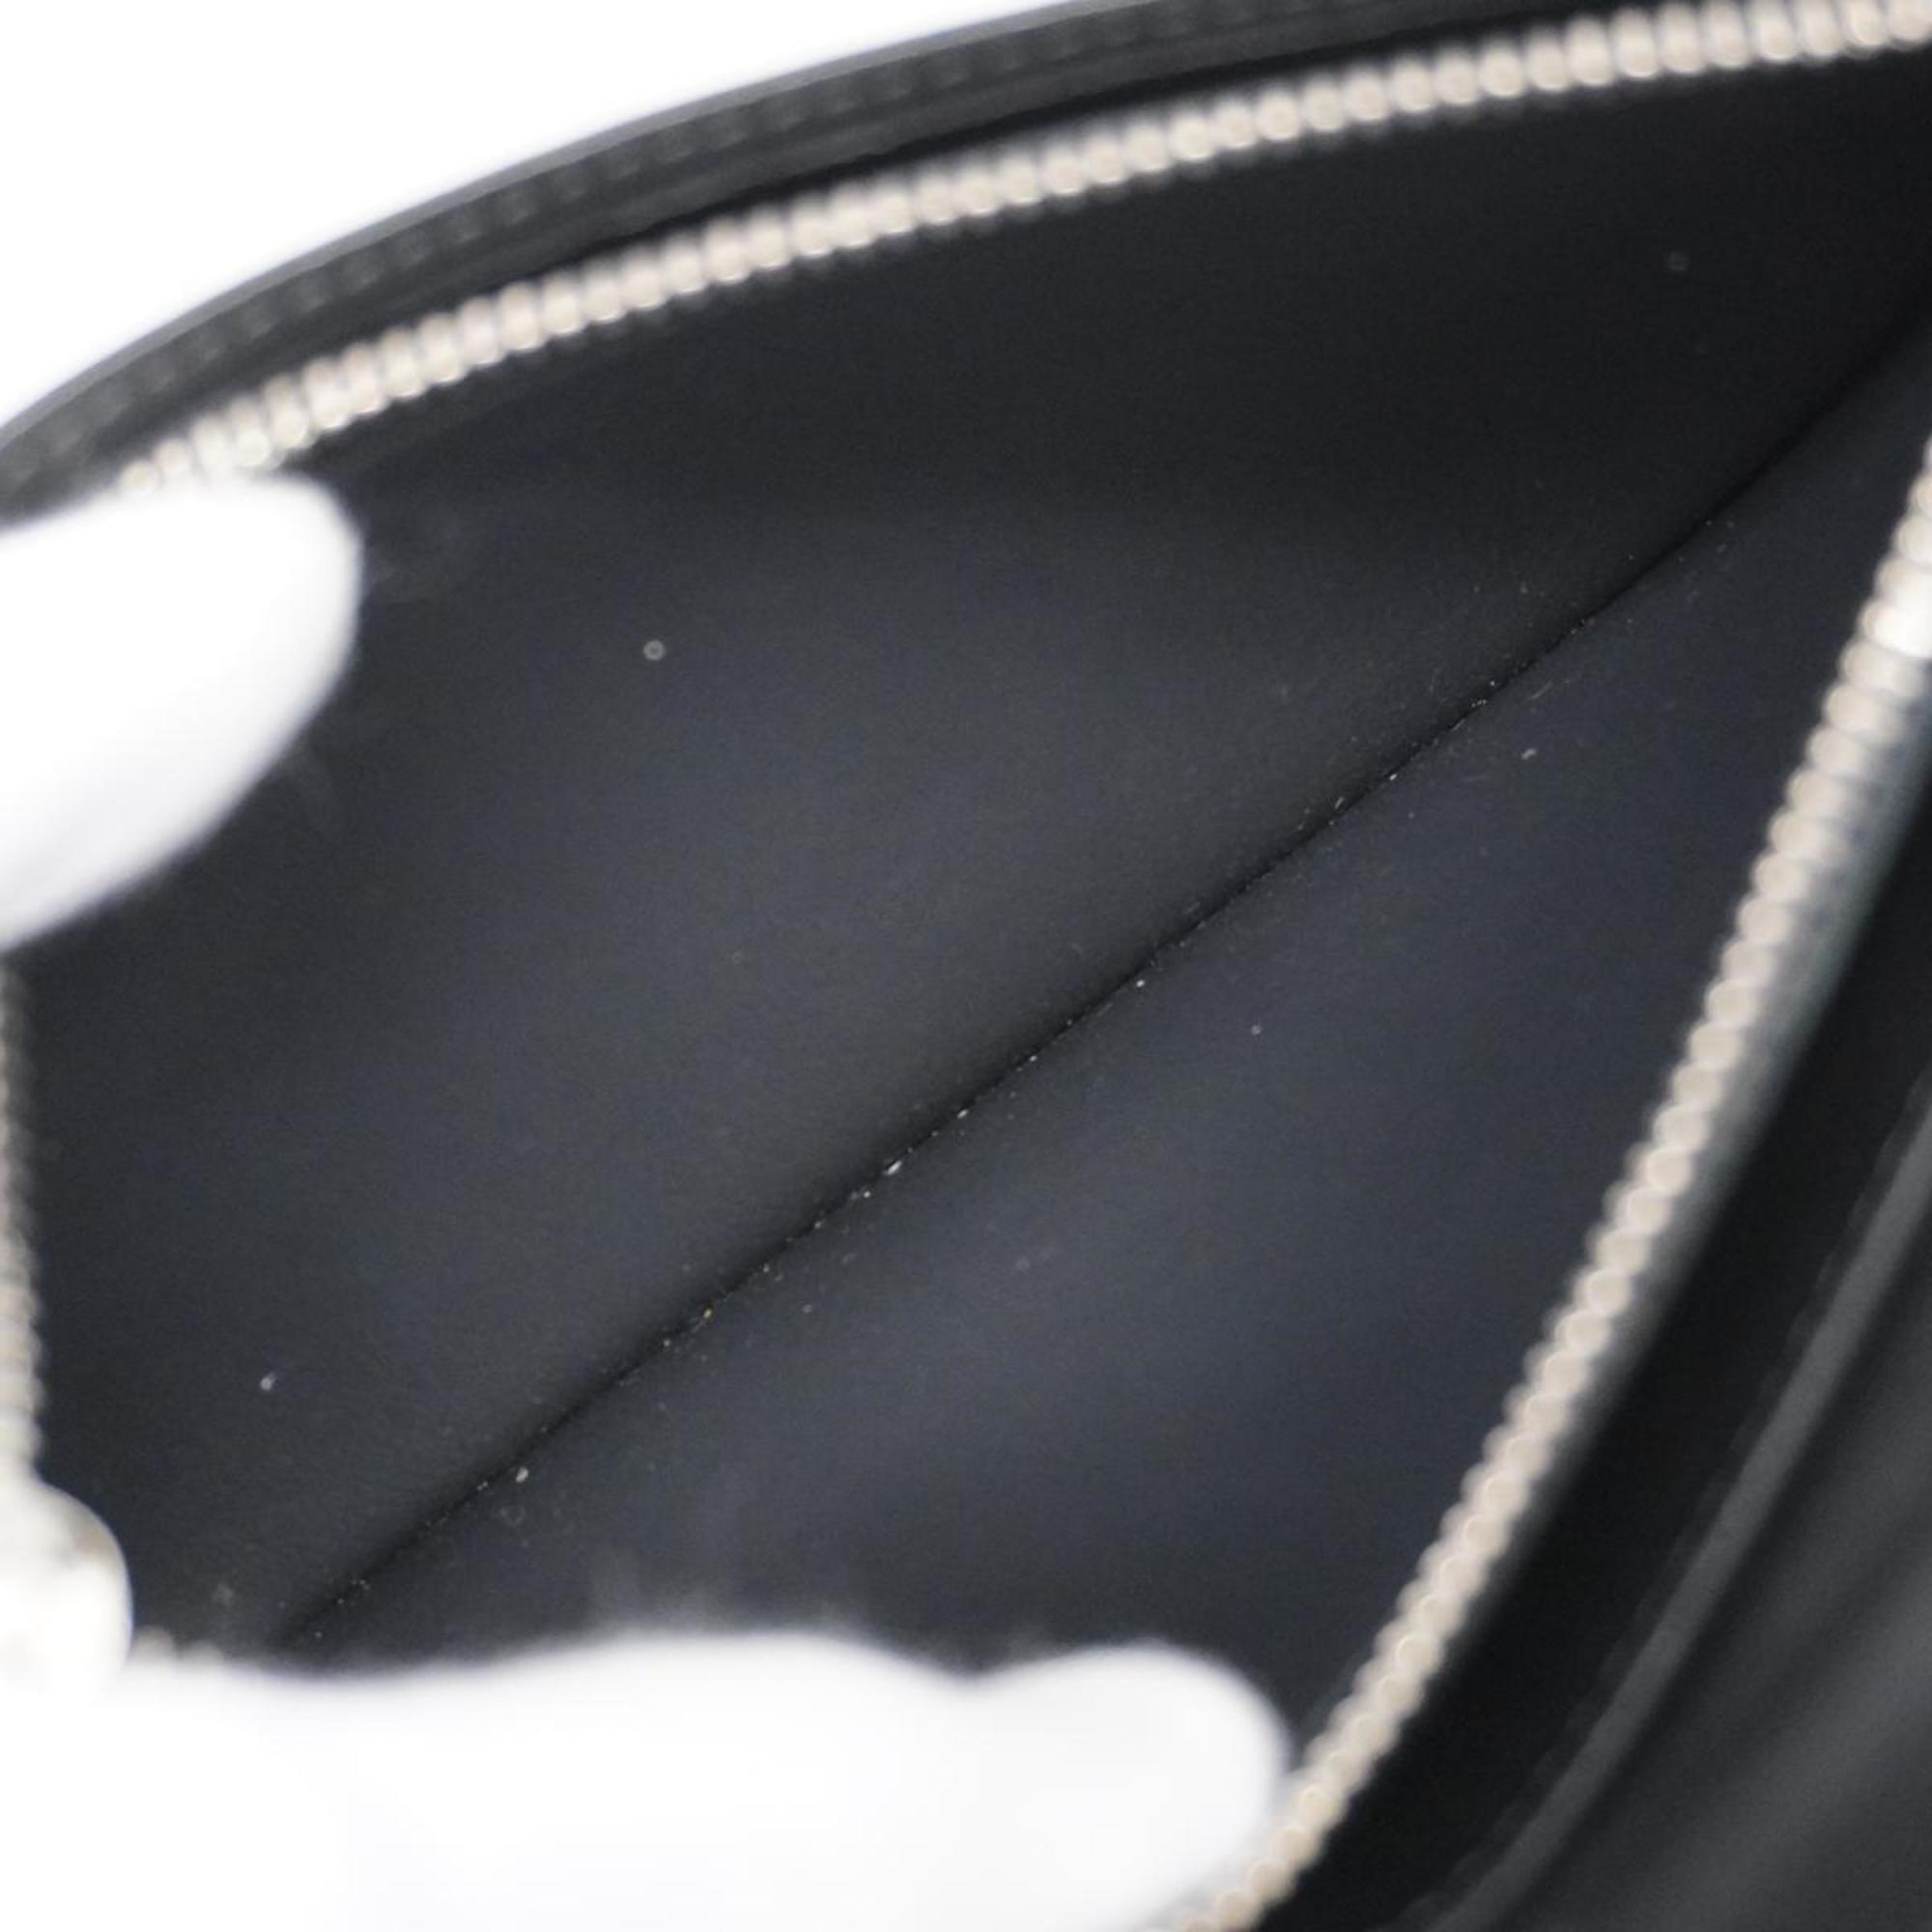 ルイ・ヴィトン(Louis Vuitton) ルイ・ヴィトン 長財布 ダミエ・コバルト ポルトフォイユブラザ N63212 コバルトブルー ブラックメンズ